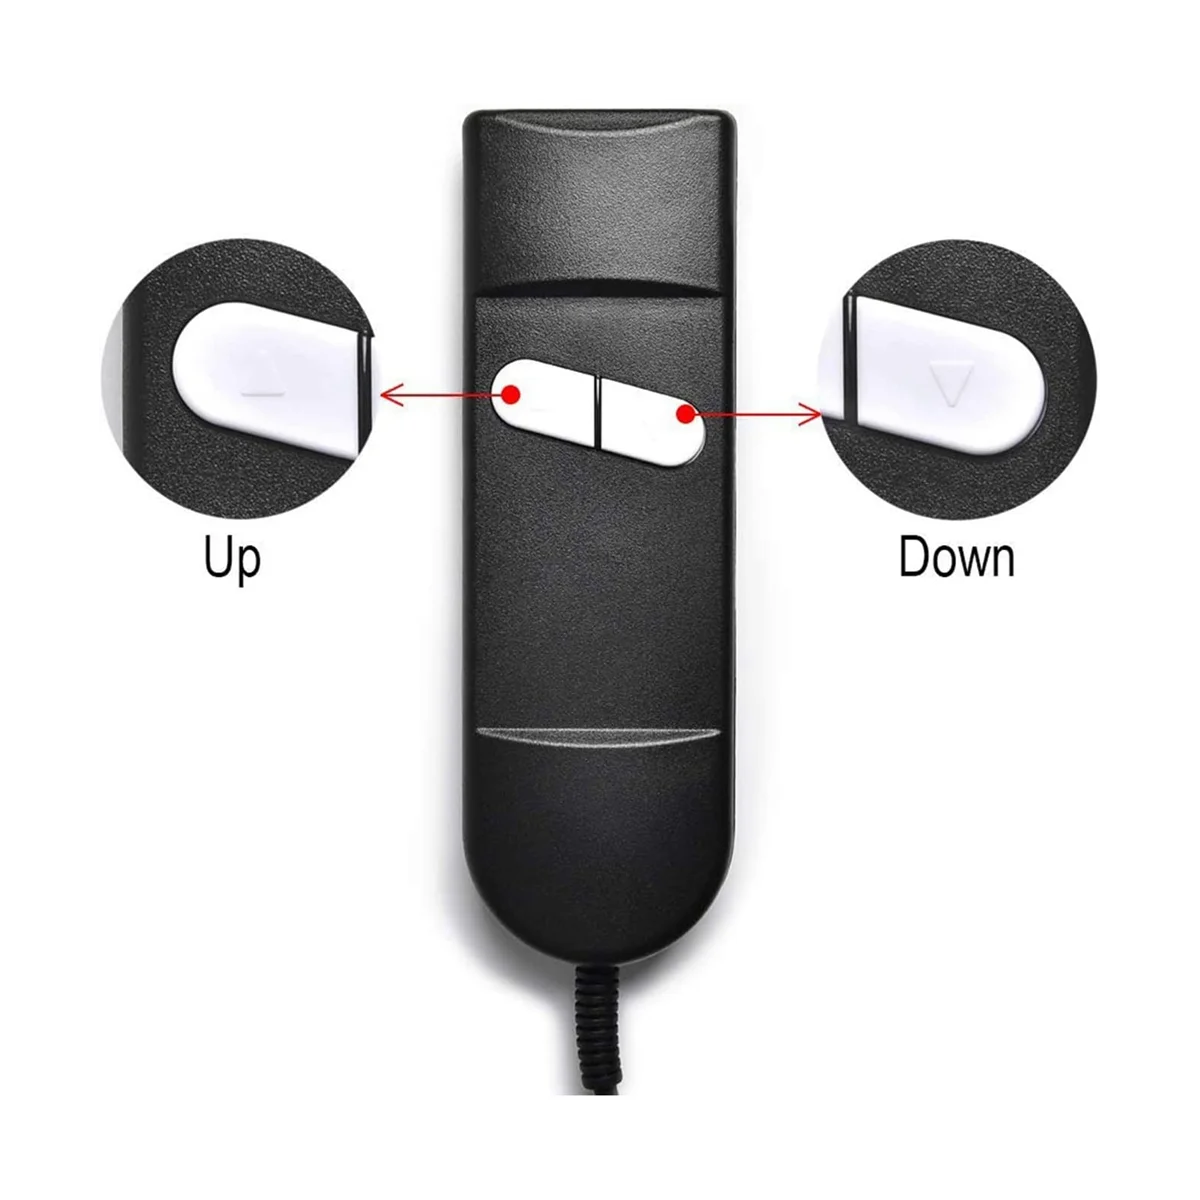  Замена пульта дистанционного управления креслом, 5-контактный 2-кнопочный пульт дистанционного управления с электроприводом для Okin Limoss Pride - локоть